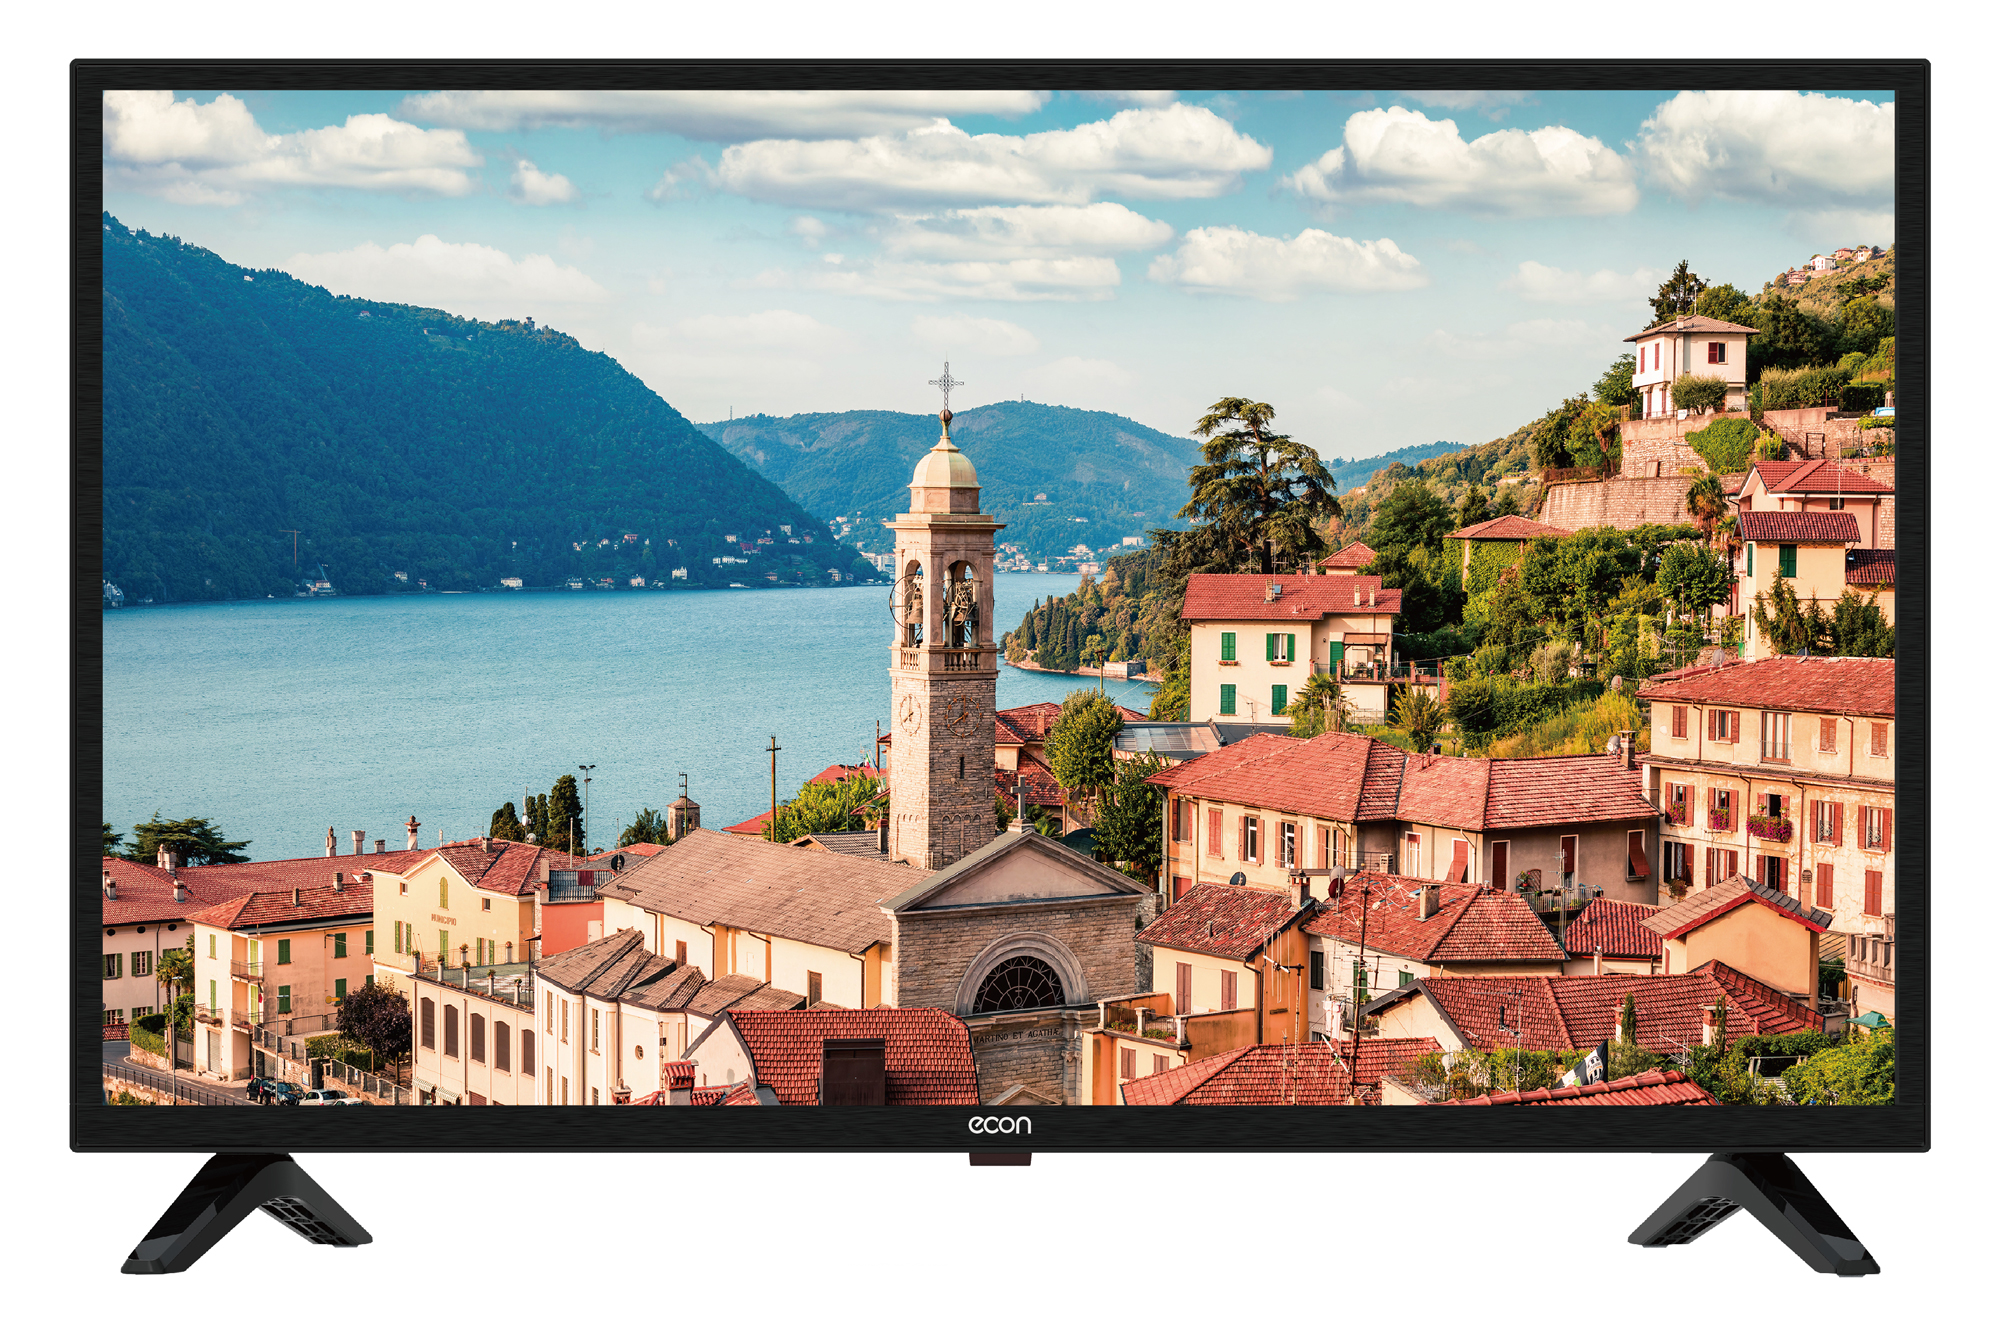 Картинка Smart телевизор ECON EX-40FS008B по разумной цене купить в интернет магазине mall.su